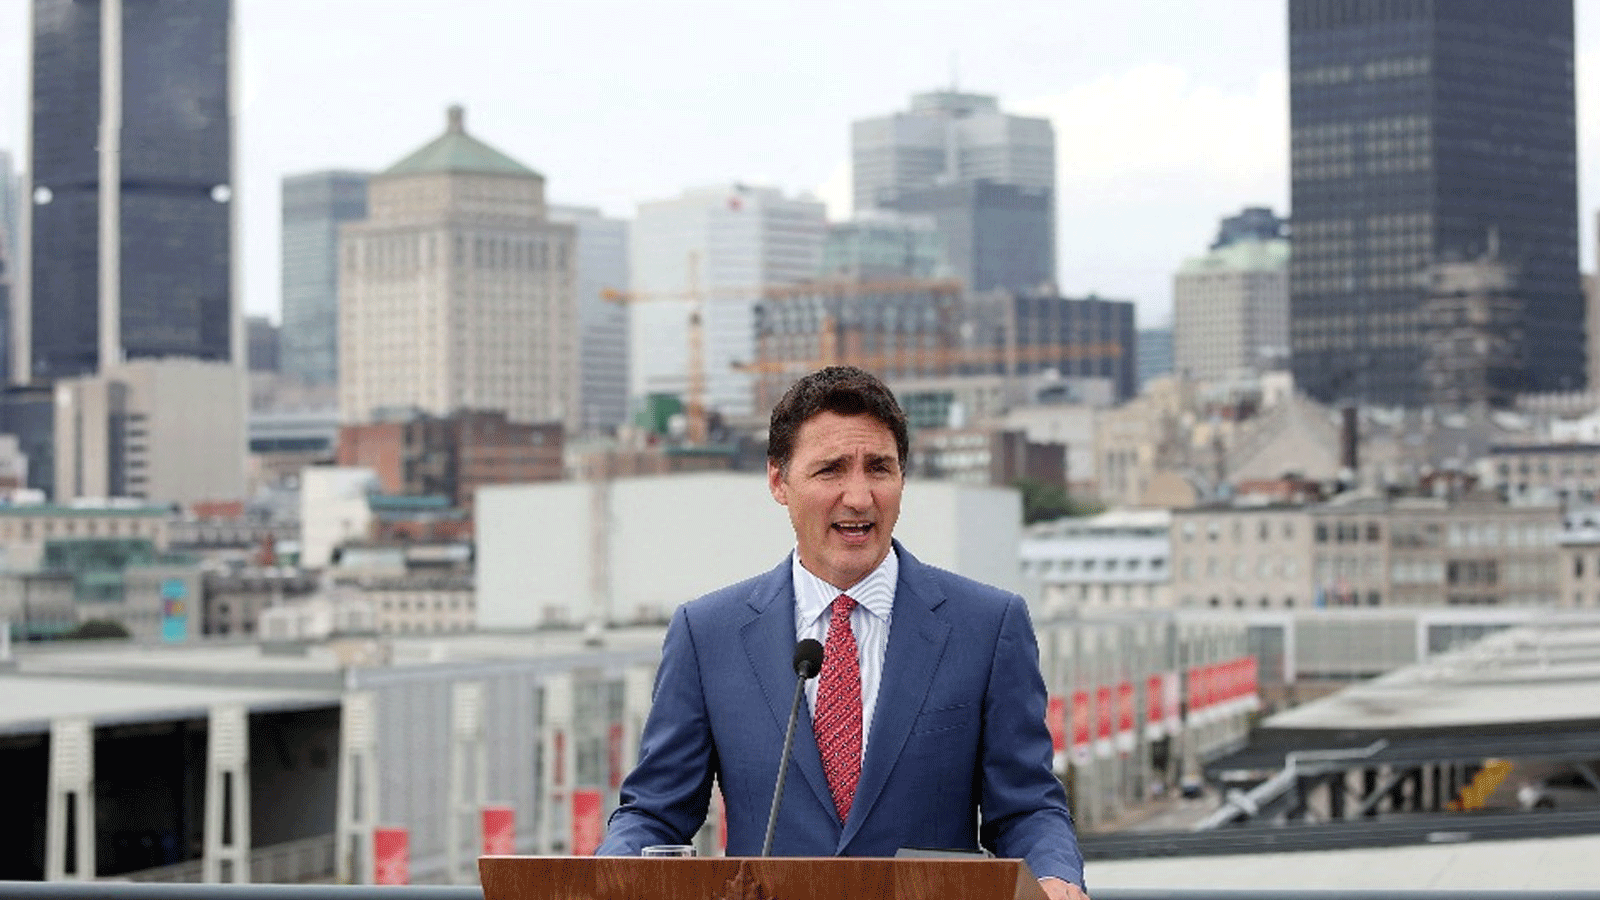 رئيس الوزراء الكندي جاستن ترودو 